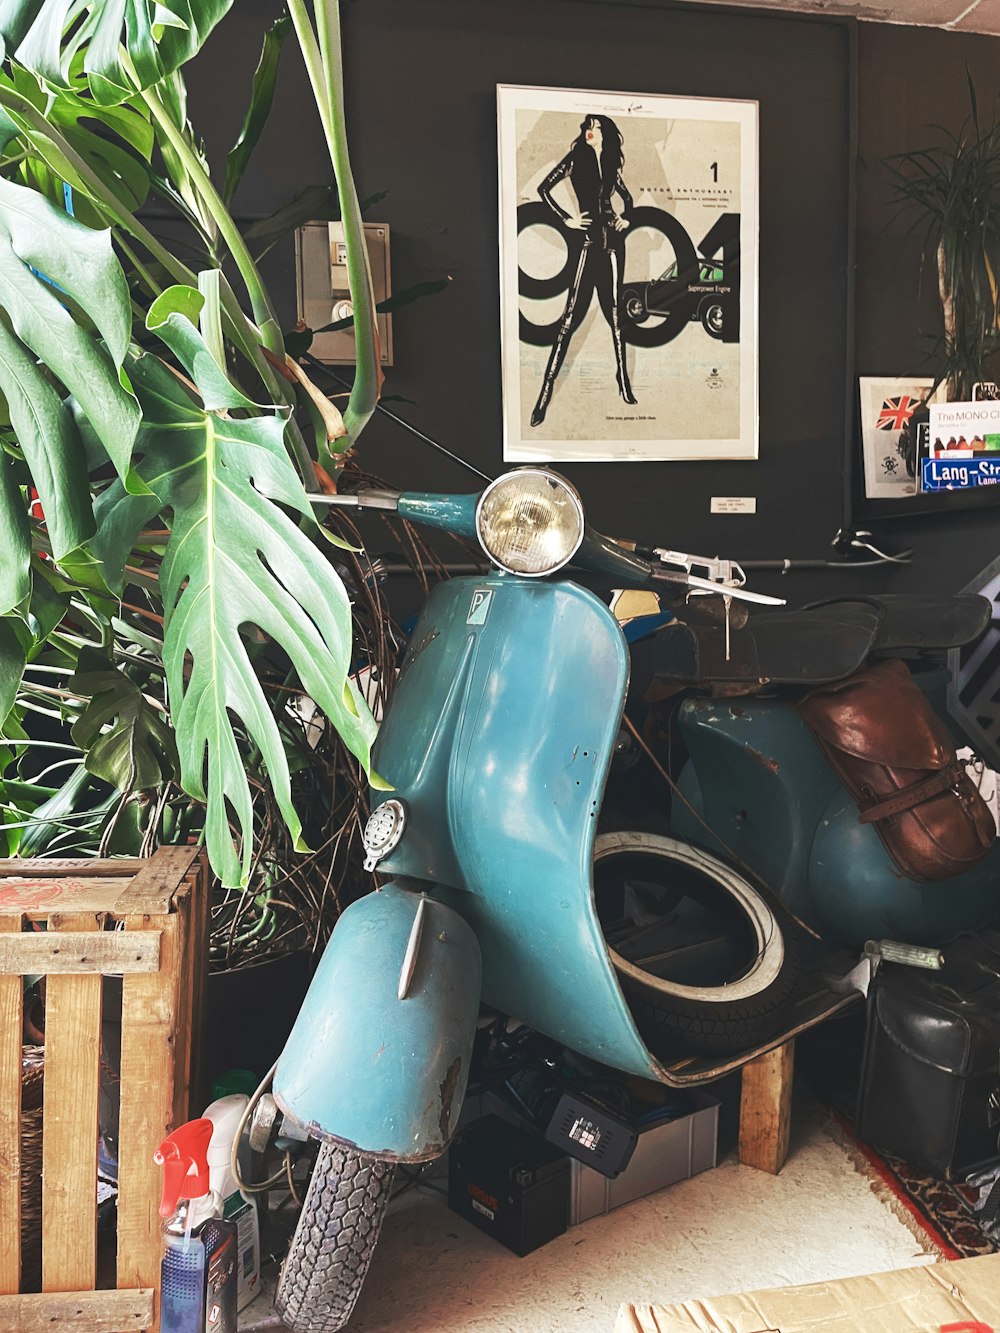 Una moto in mostra in un negozio